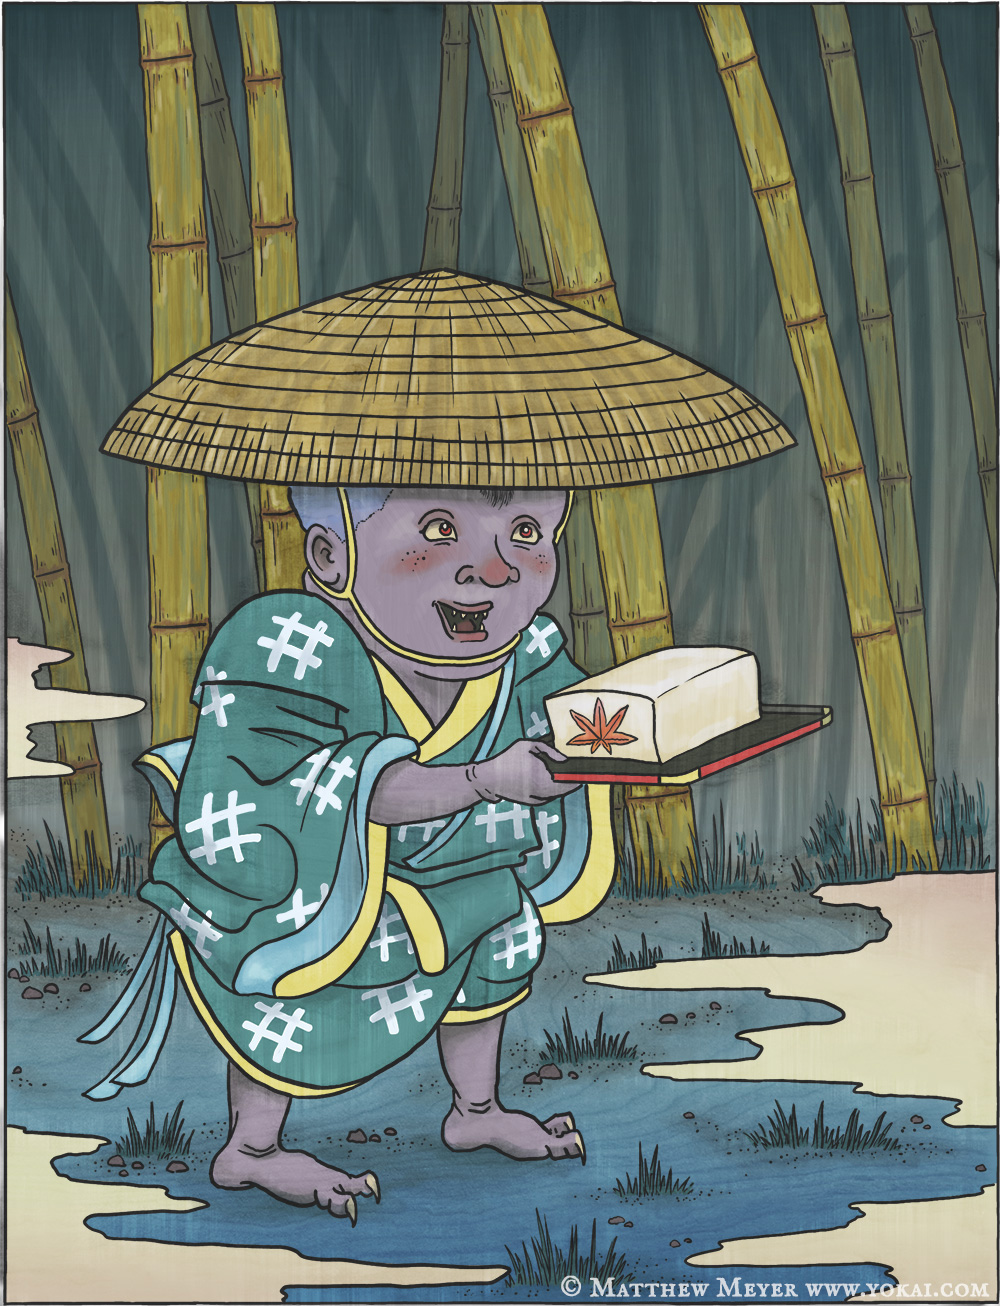 Tōfu kozō-豆腐小僧(とうふこぞう)